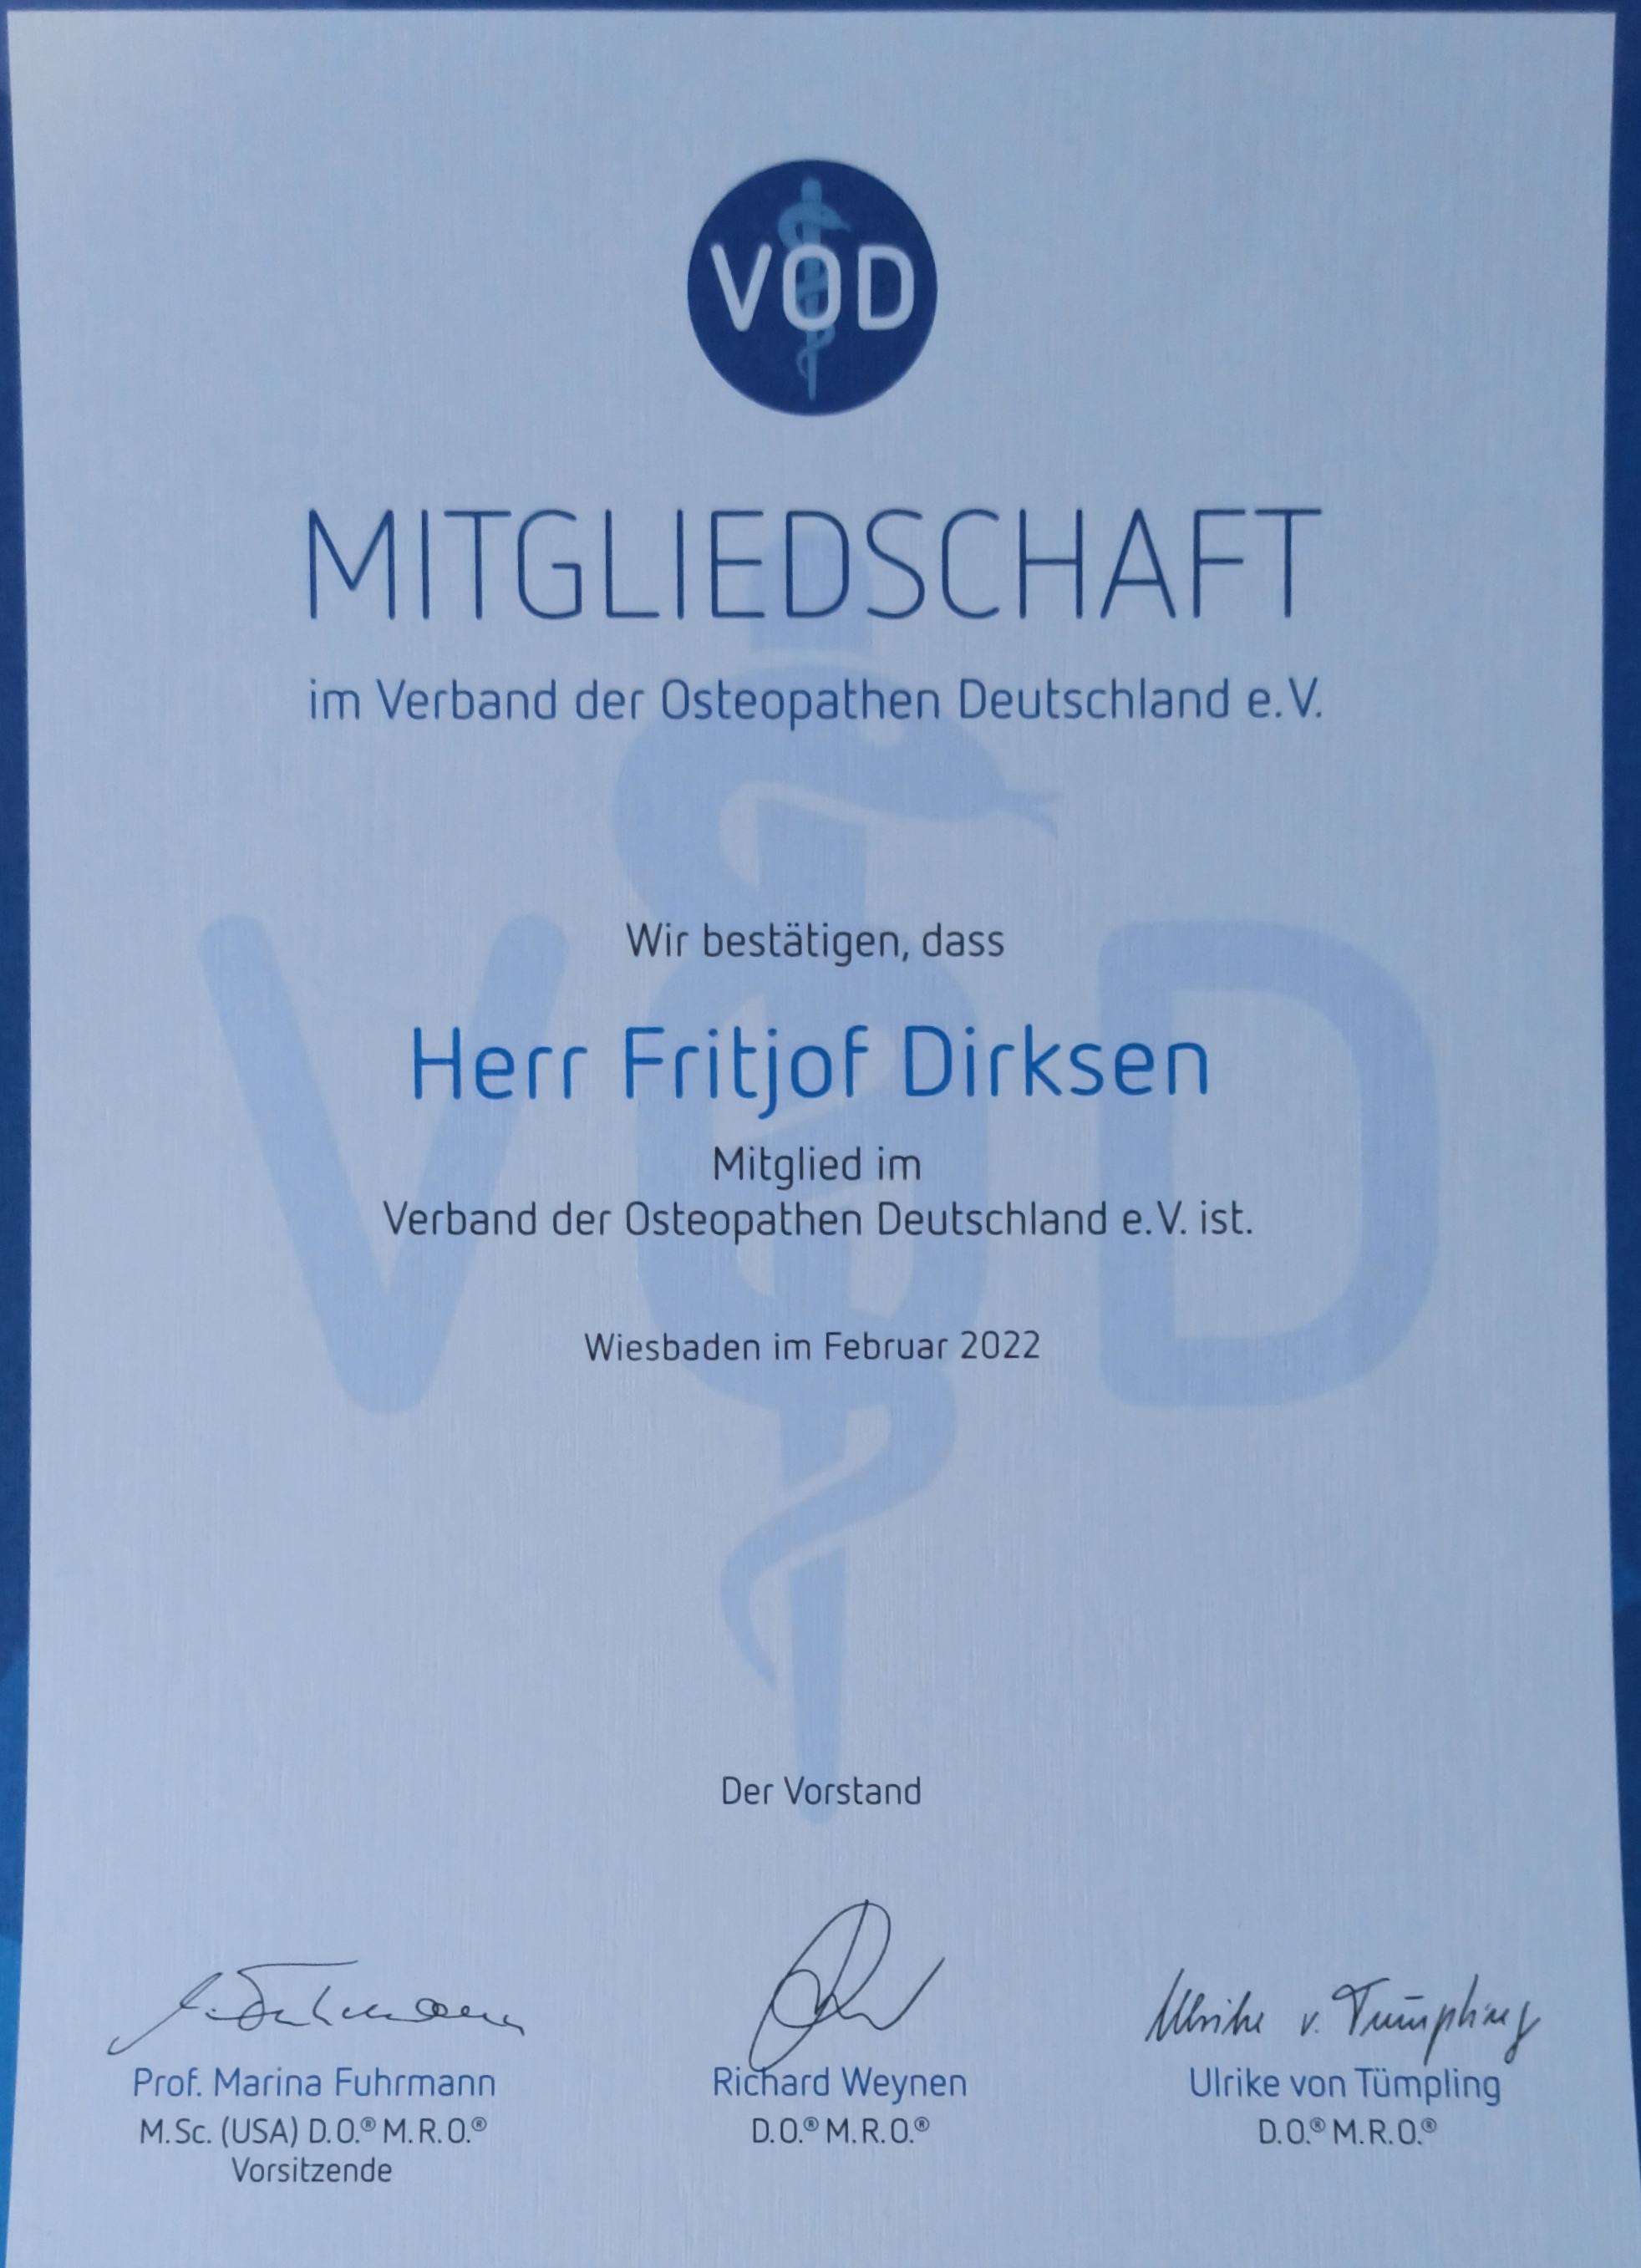 Nachweis der Mitgliedschaft im Verband der Osteopathen Deutschland e.V. (VOD)